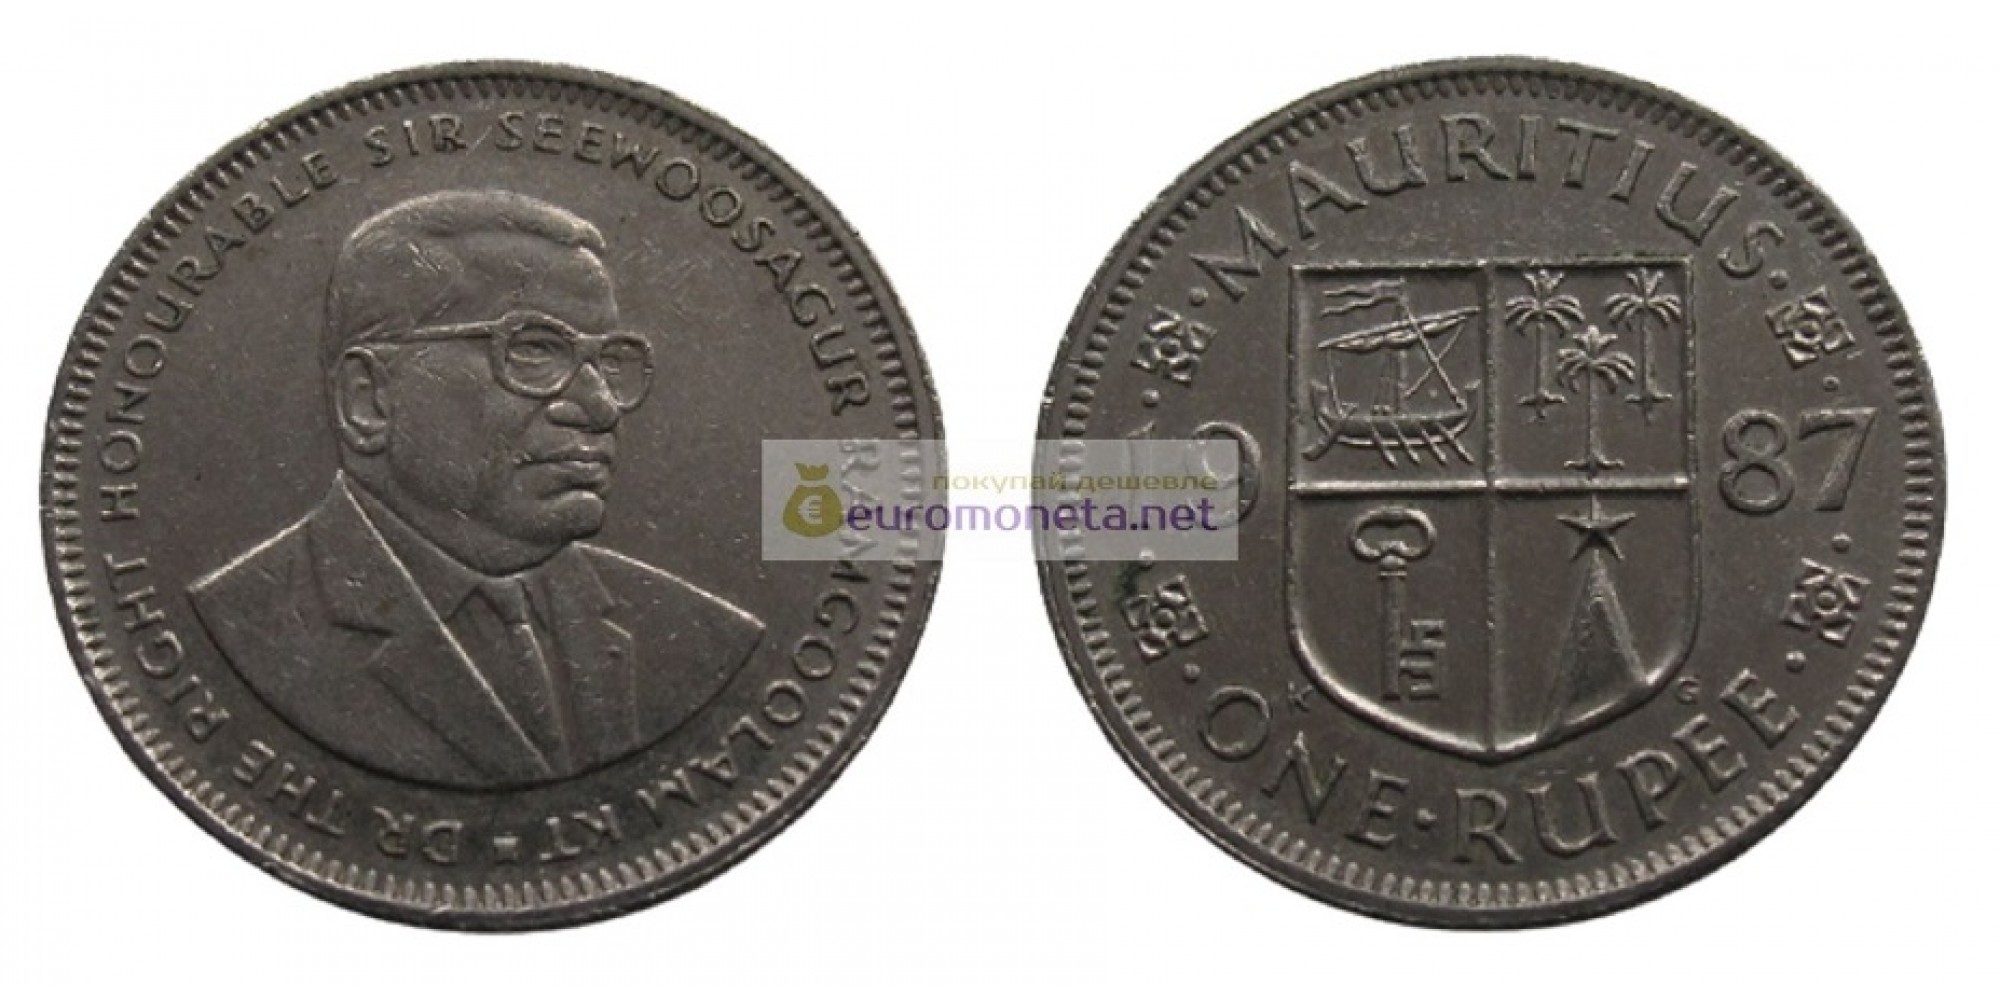 Республика Маврикий 1 рупия 1987 год. Сивусагур Рамгулам